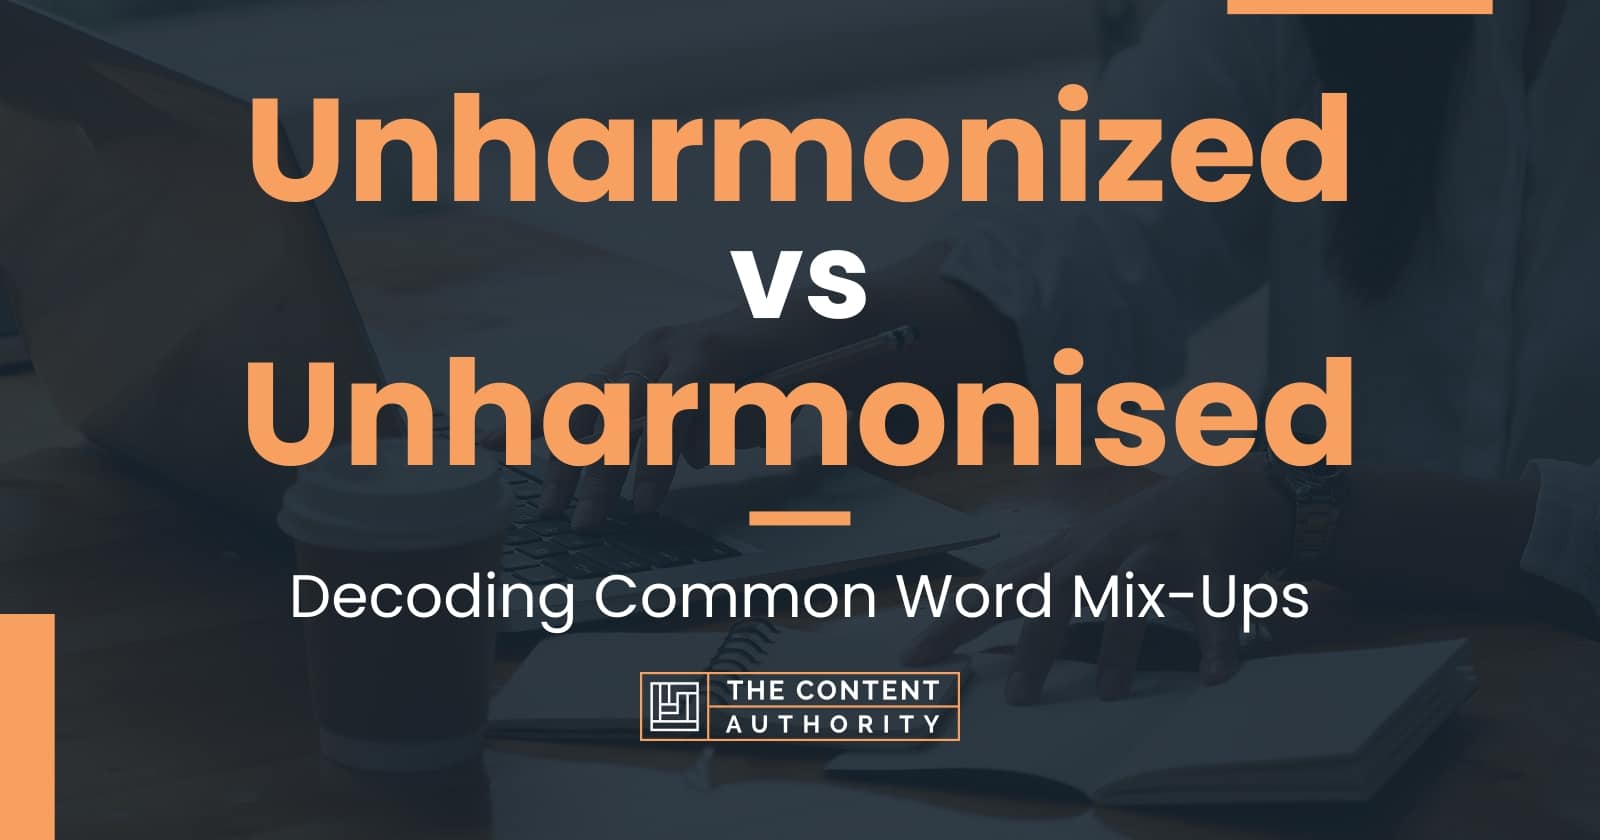 Unharmonized vs Unharmonised: Decoding Common Word Mix-Ups